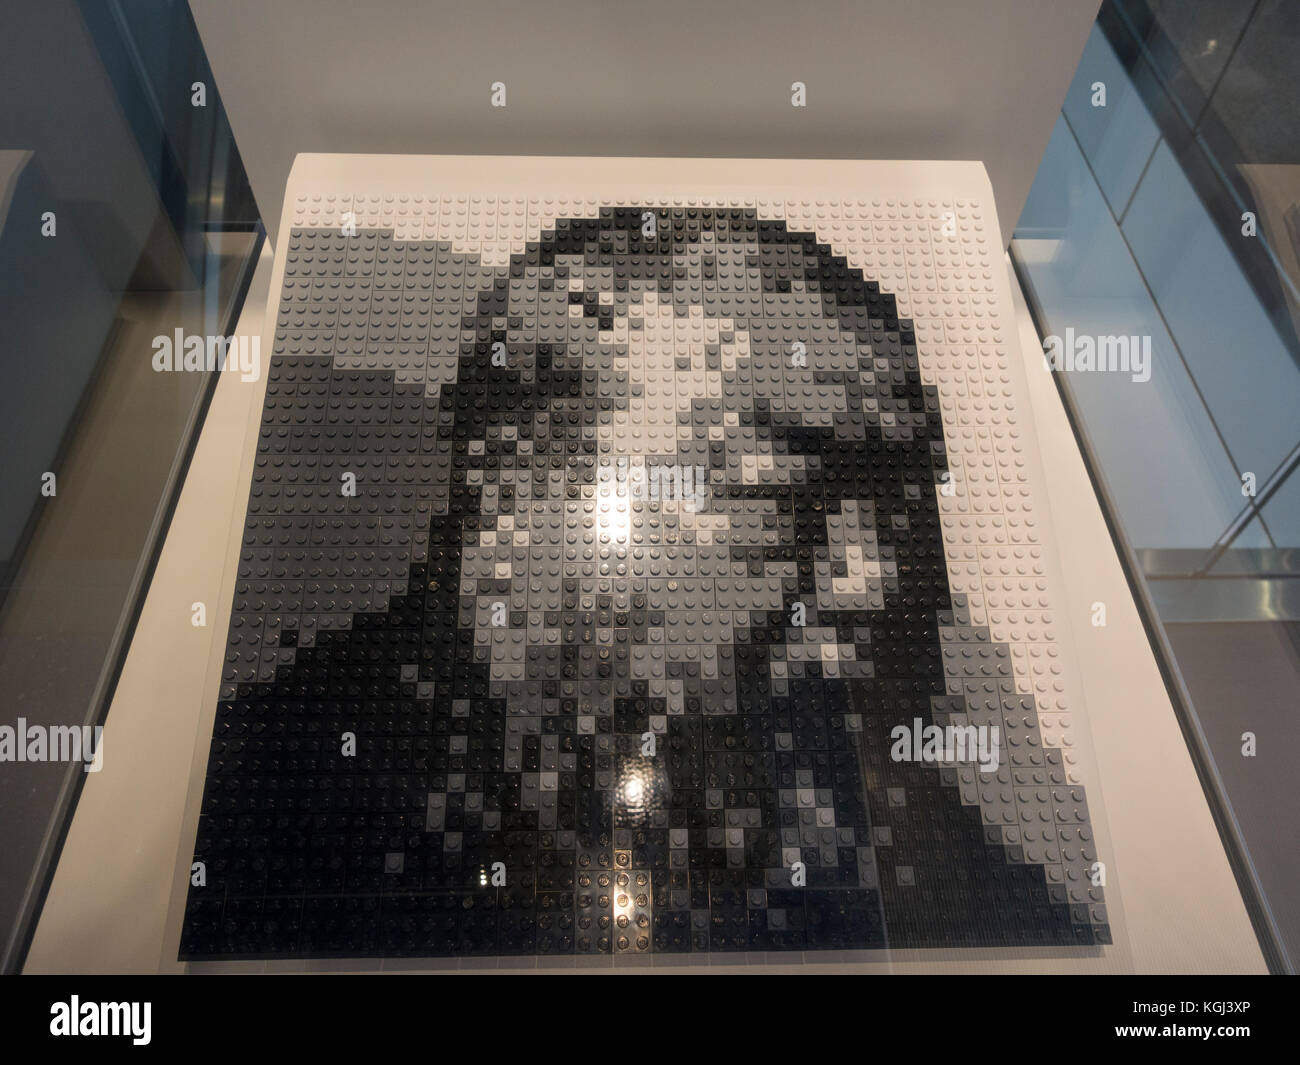 Self Portrait in Lego der Künstler Ai Weiwei in Newseum, ein interaktives Museum in Washington DC, USA. Stockfoto